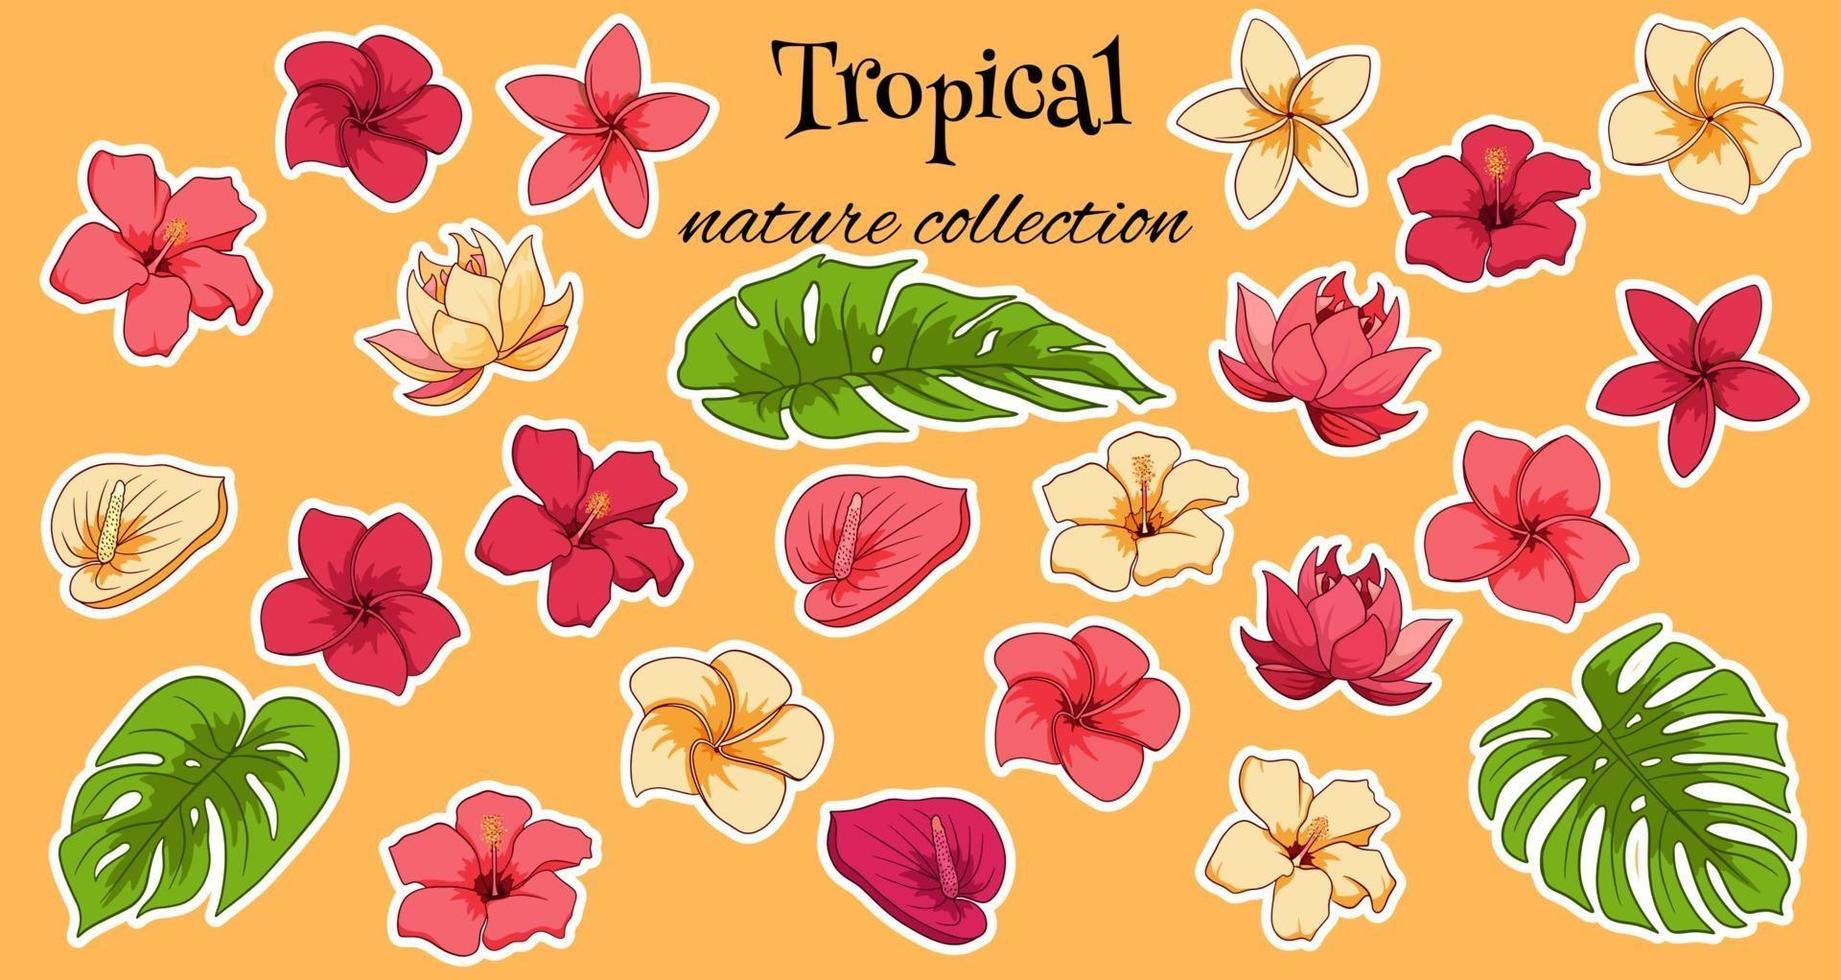 collezione tropicale con fiori esotici e foglie intagliate vettore